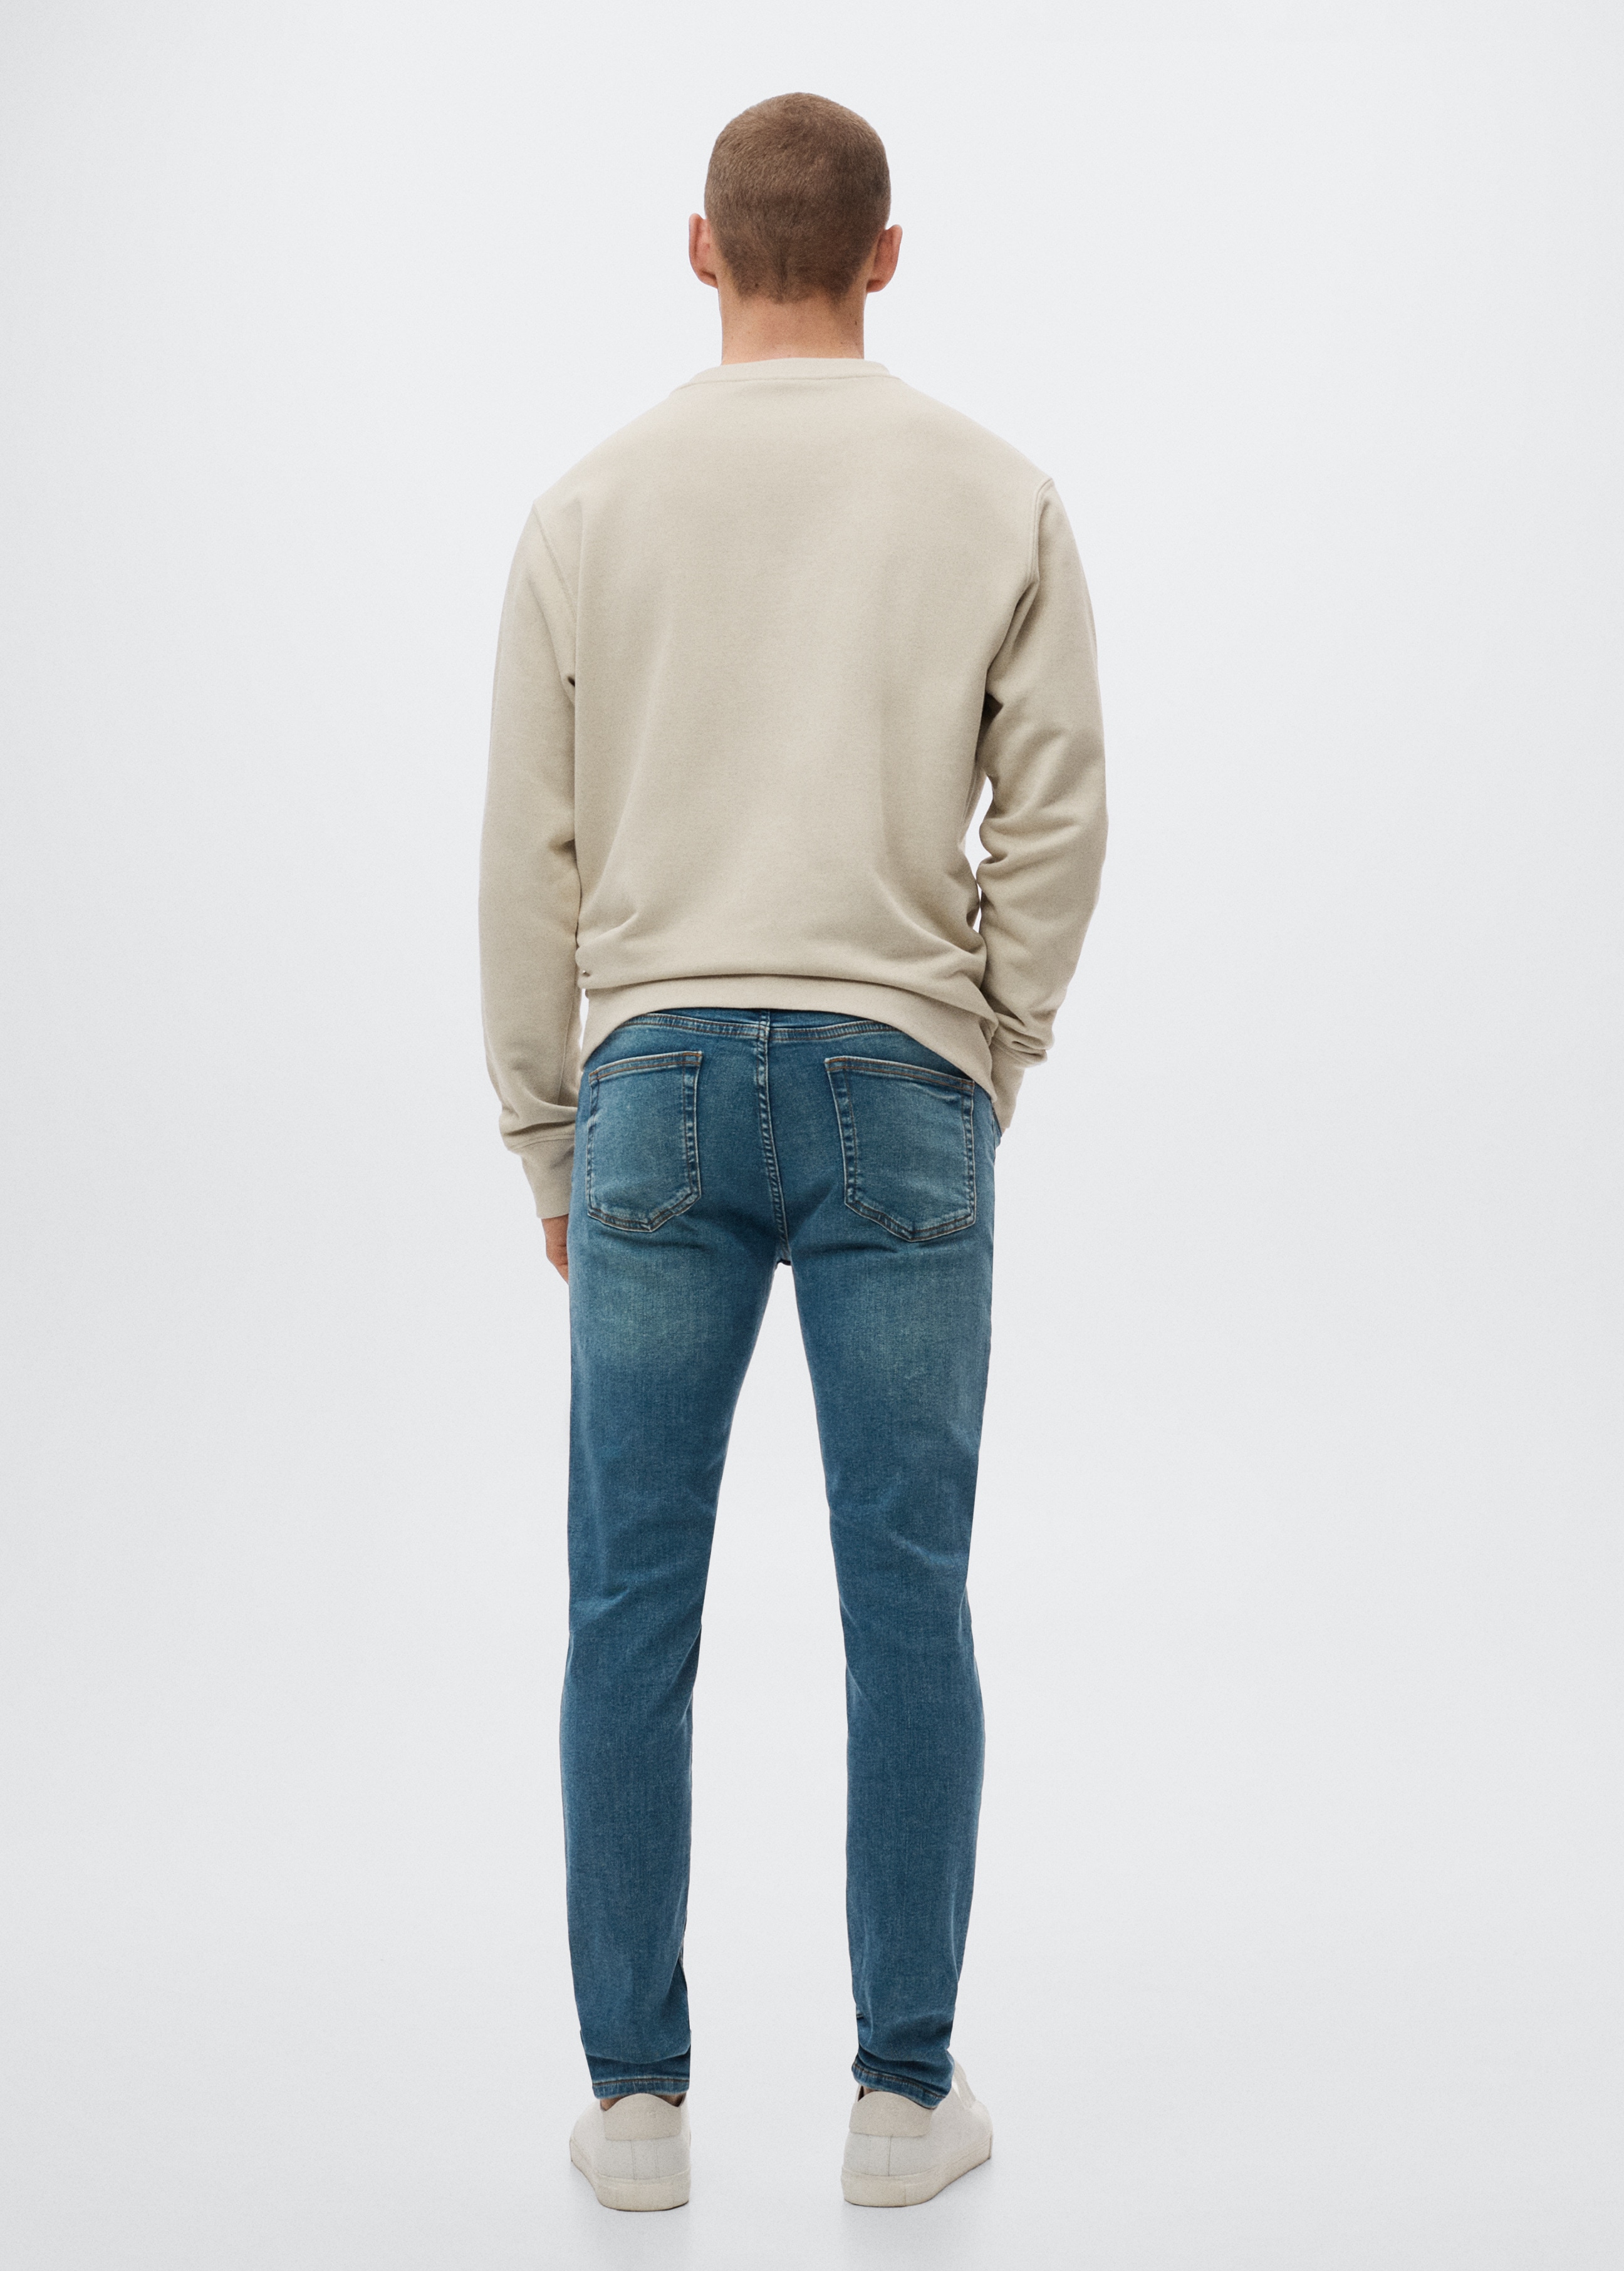 Jeans Jude skinny fit - Reverso del artículo